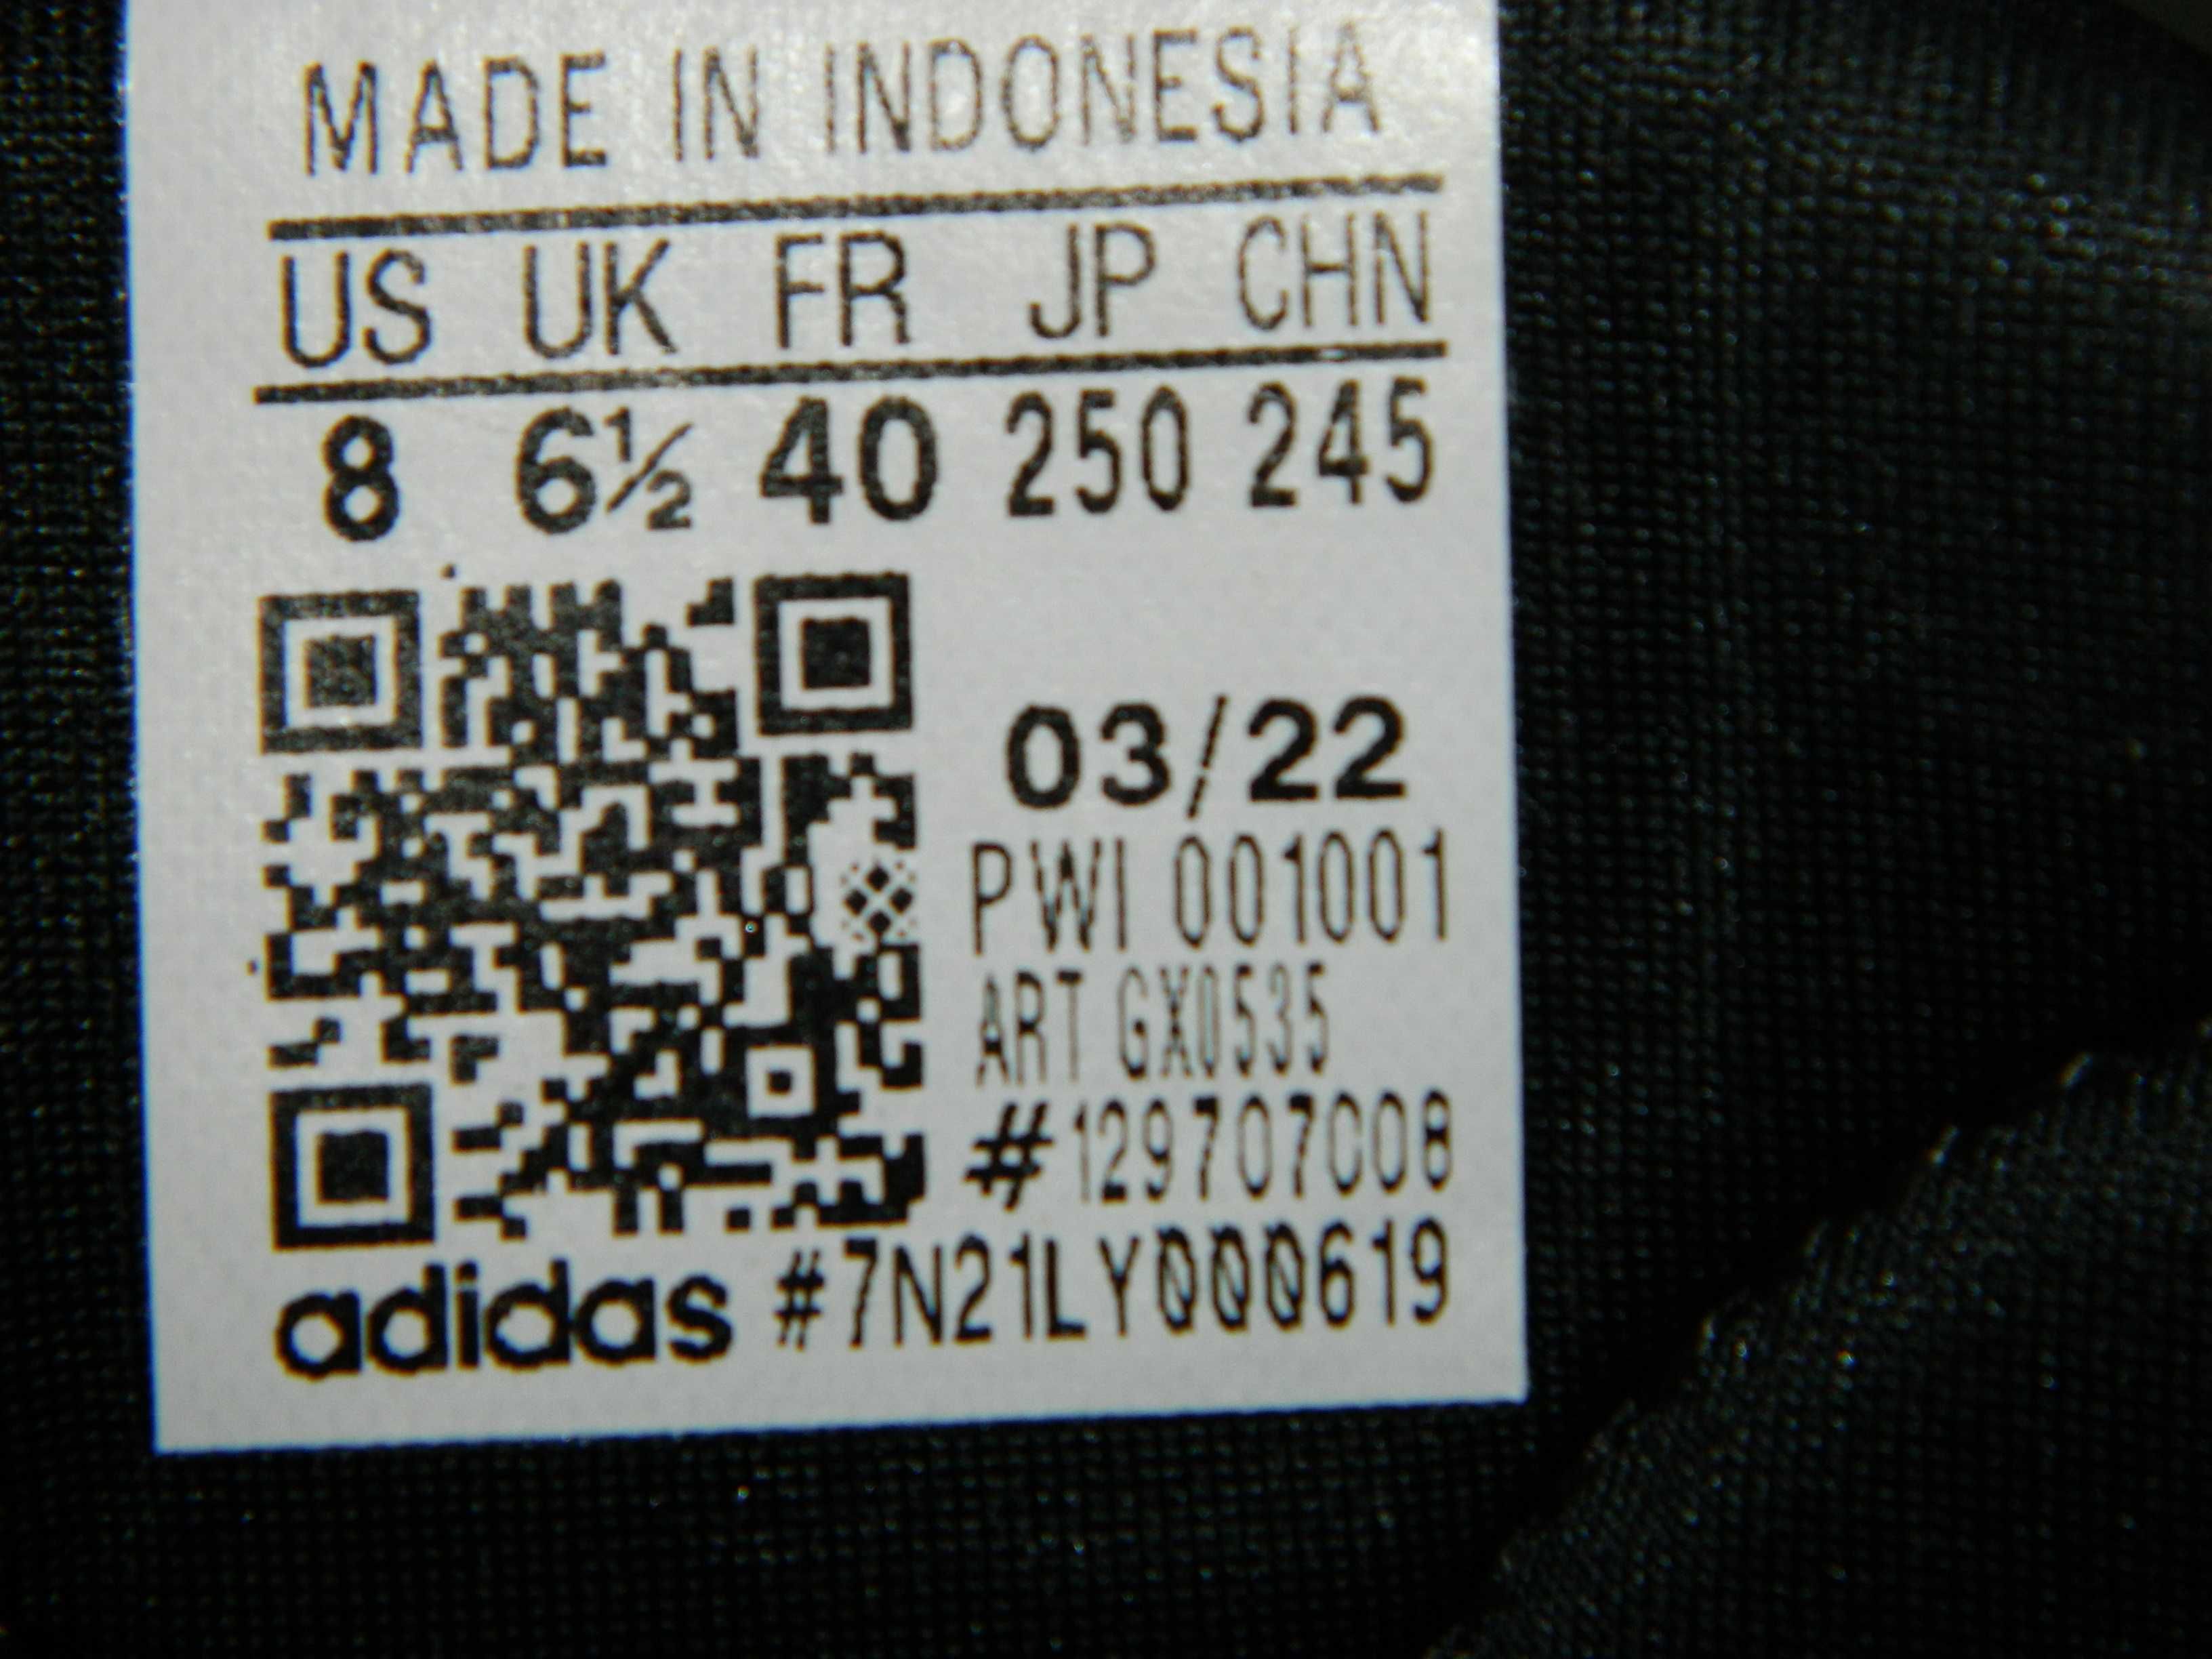 Кроссовки Adidas (оригинал) фирменные размер-40 стелька- 25,5см.